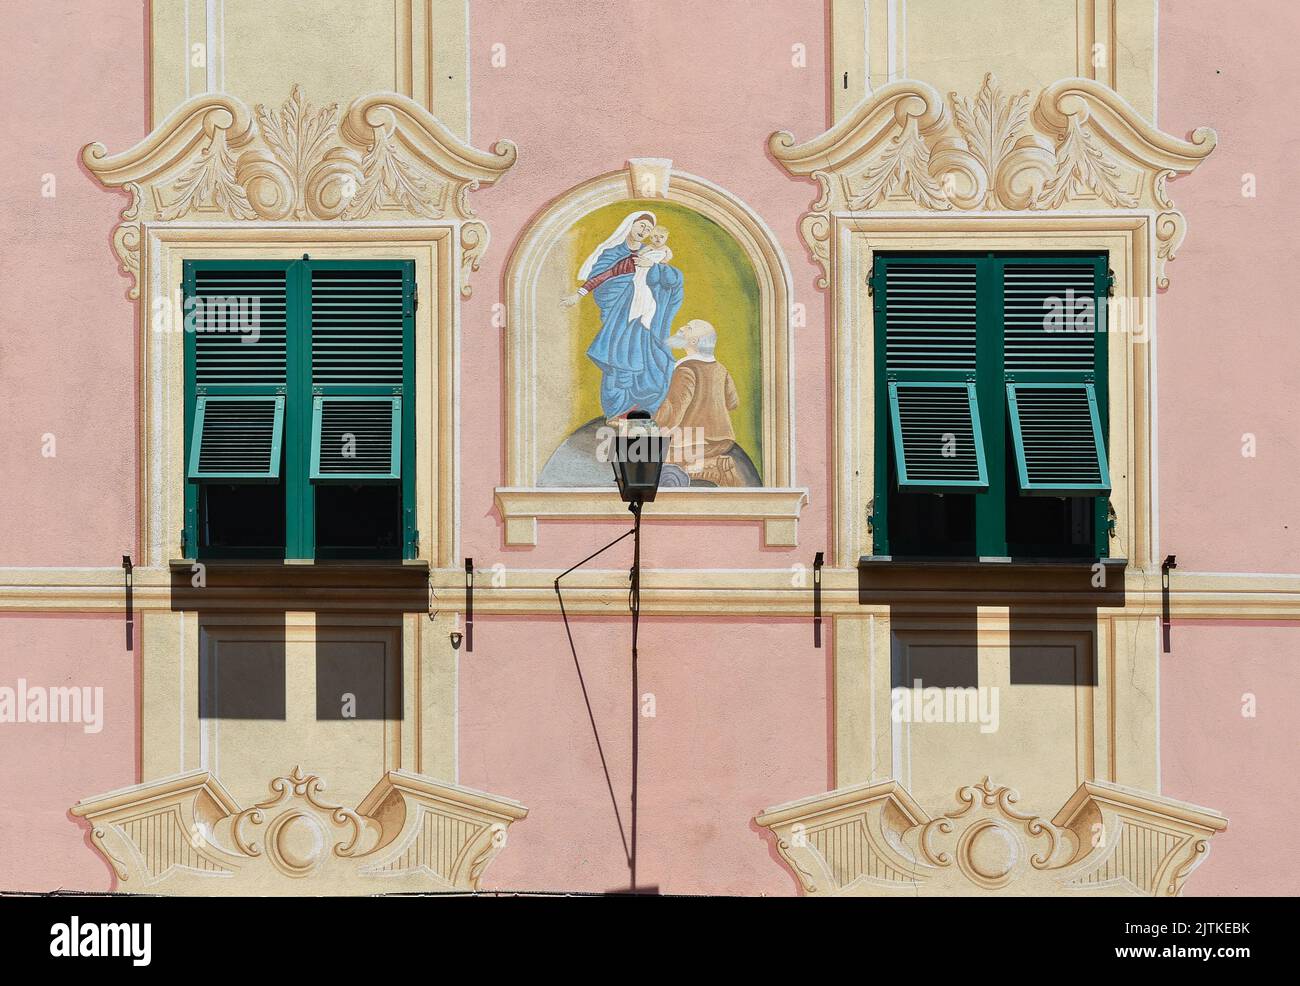 Détail de la façade d'un ancien palais avec un sanctuaire peint de notre-Dame de Montallegro et de la trompe l'oeil décorations, Nervi, Gênes, Ligurie, Italie Banque D'Images